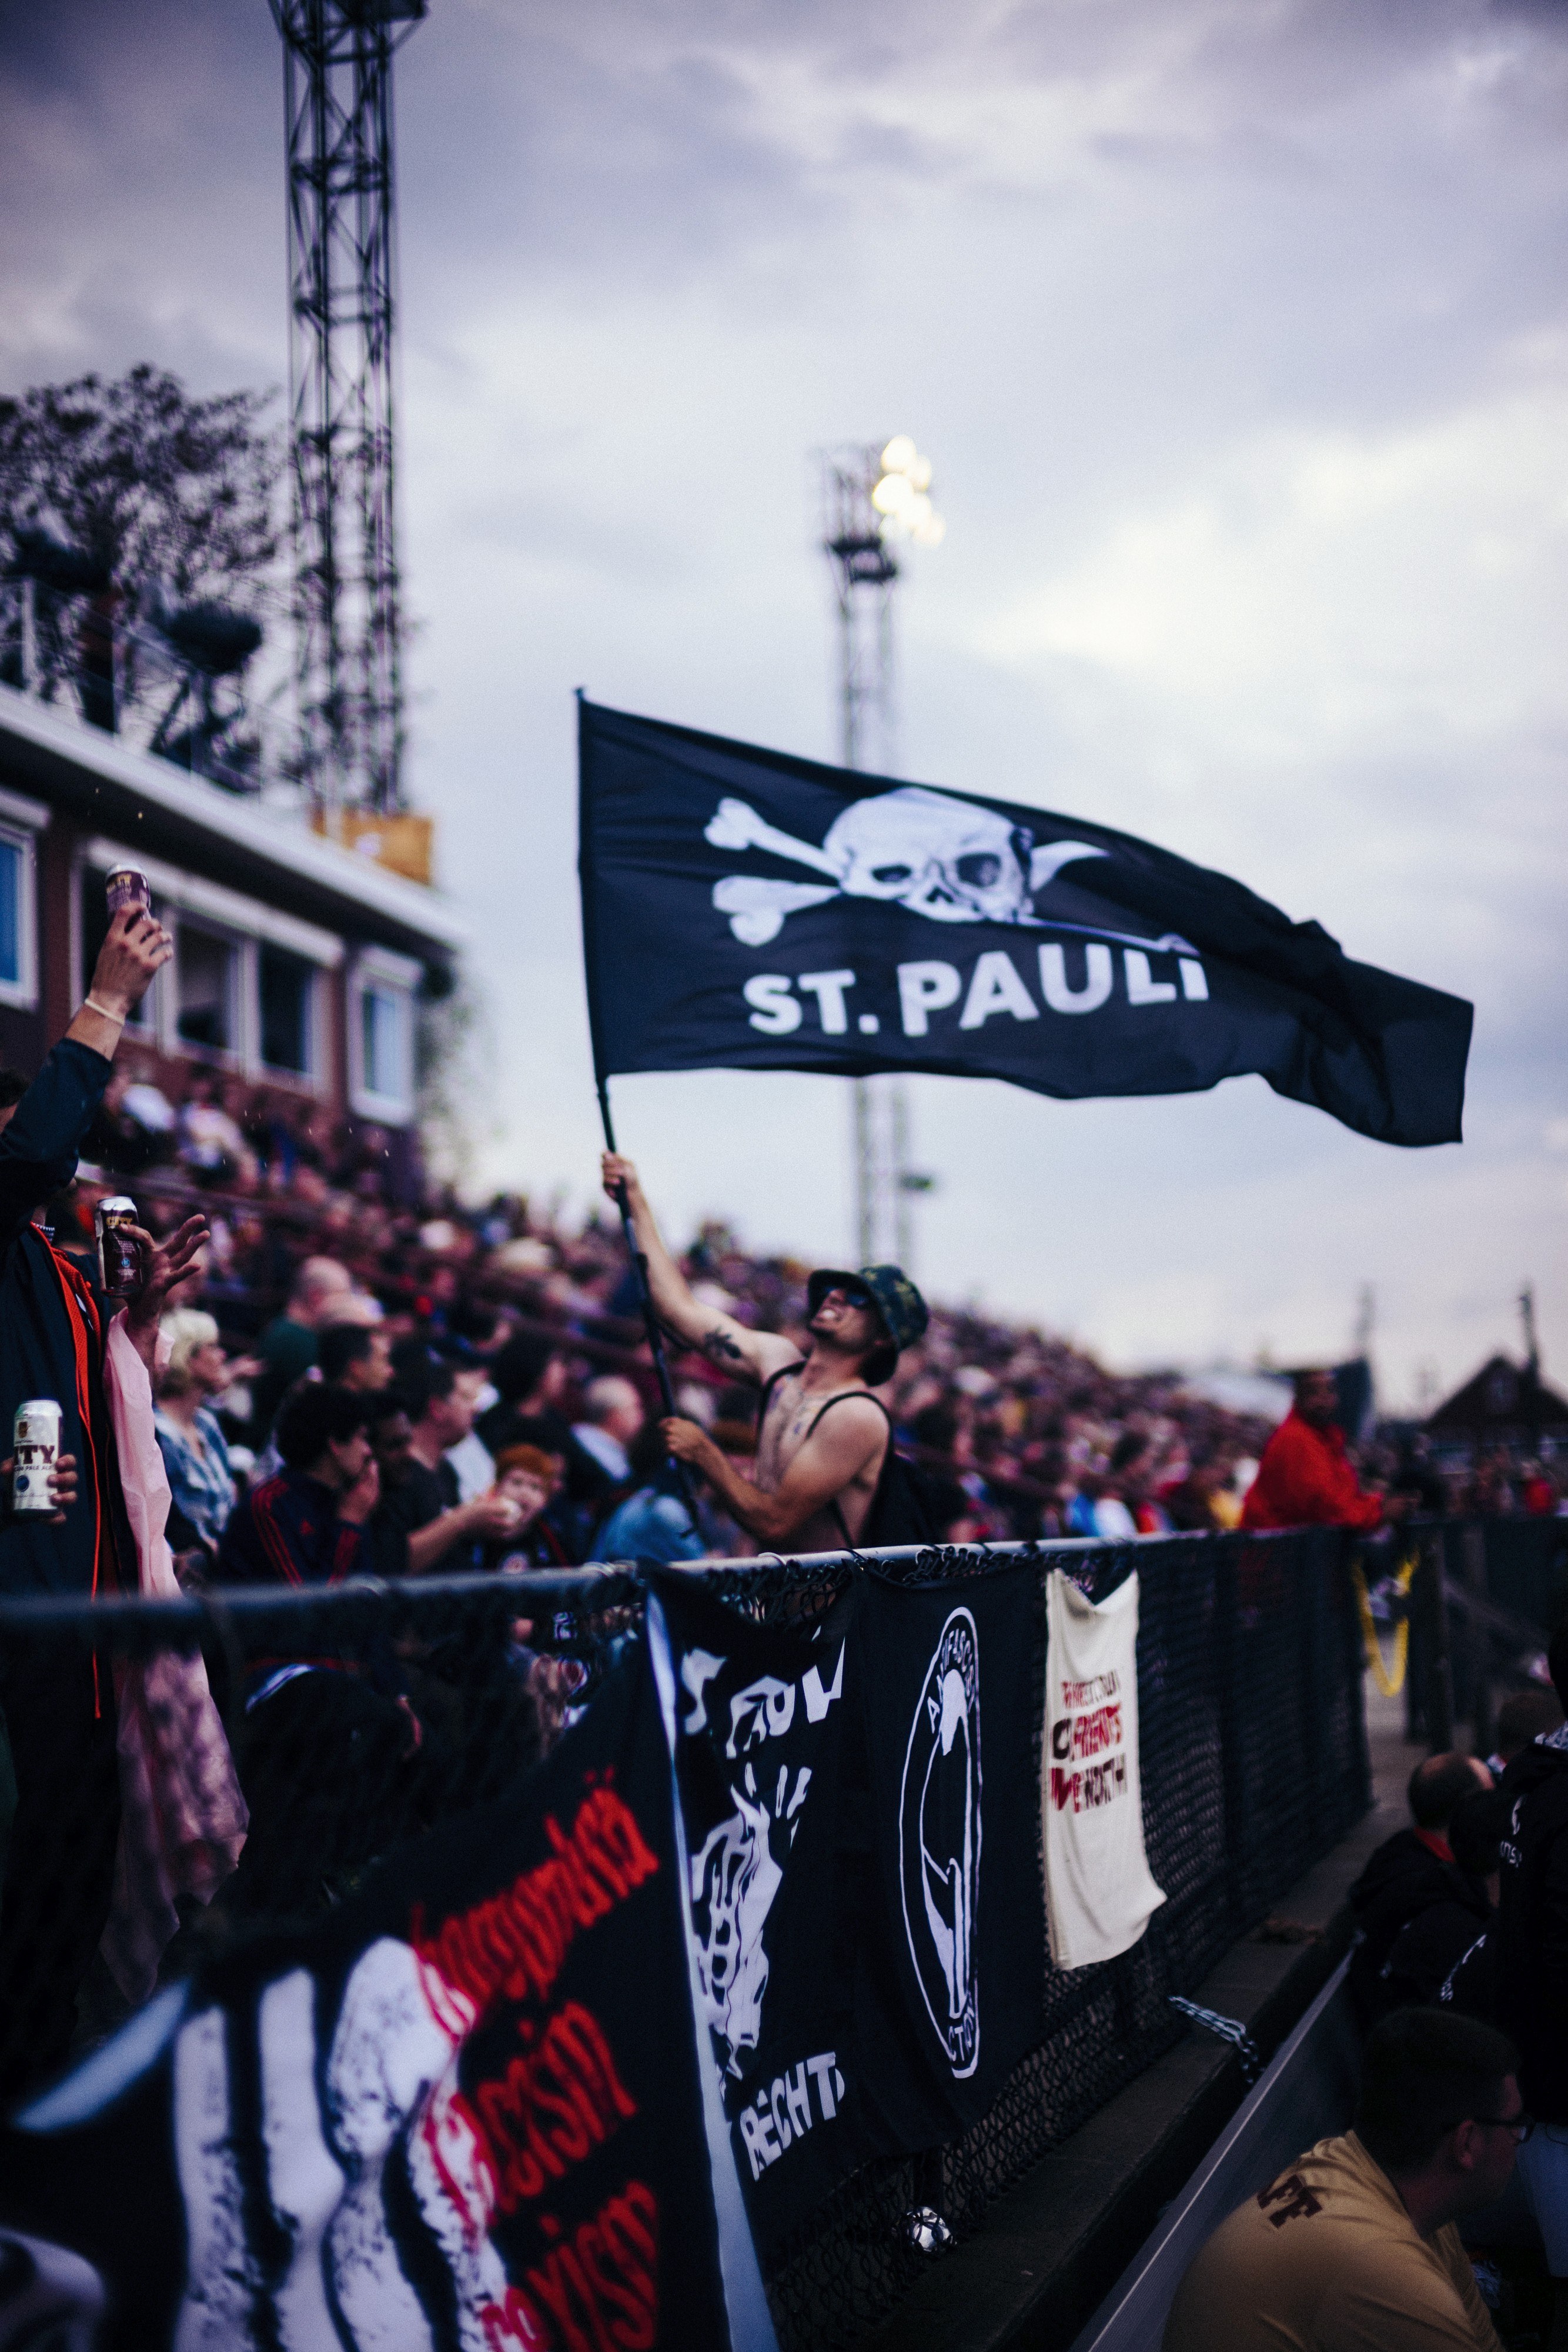 Match IQ und der FC St. Pauli verlängern langfristig ihre Zusammenarbeit